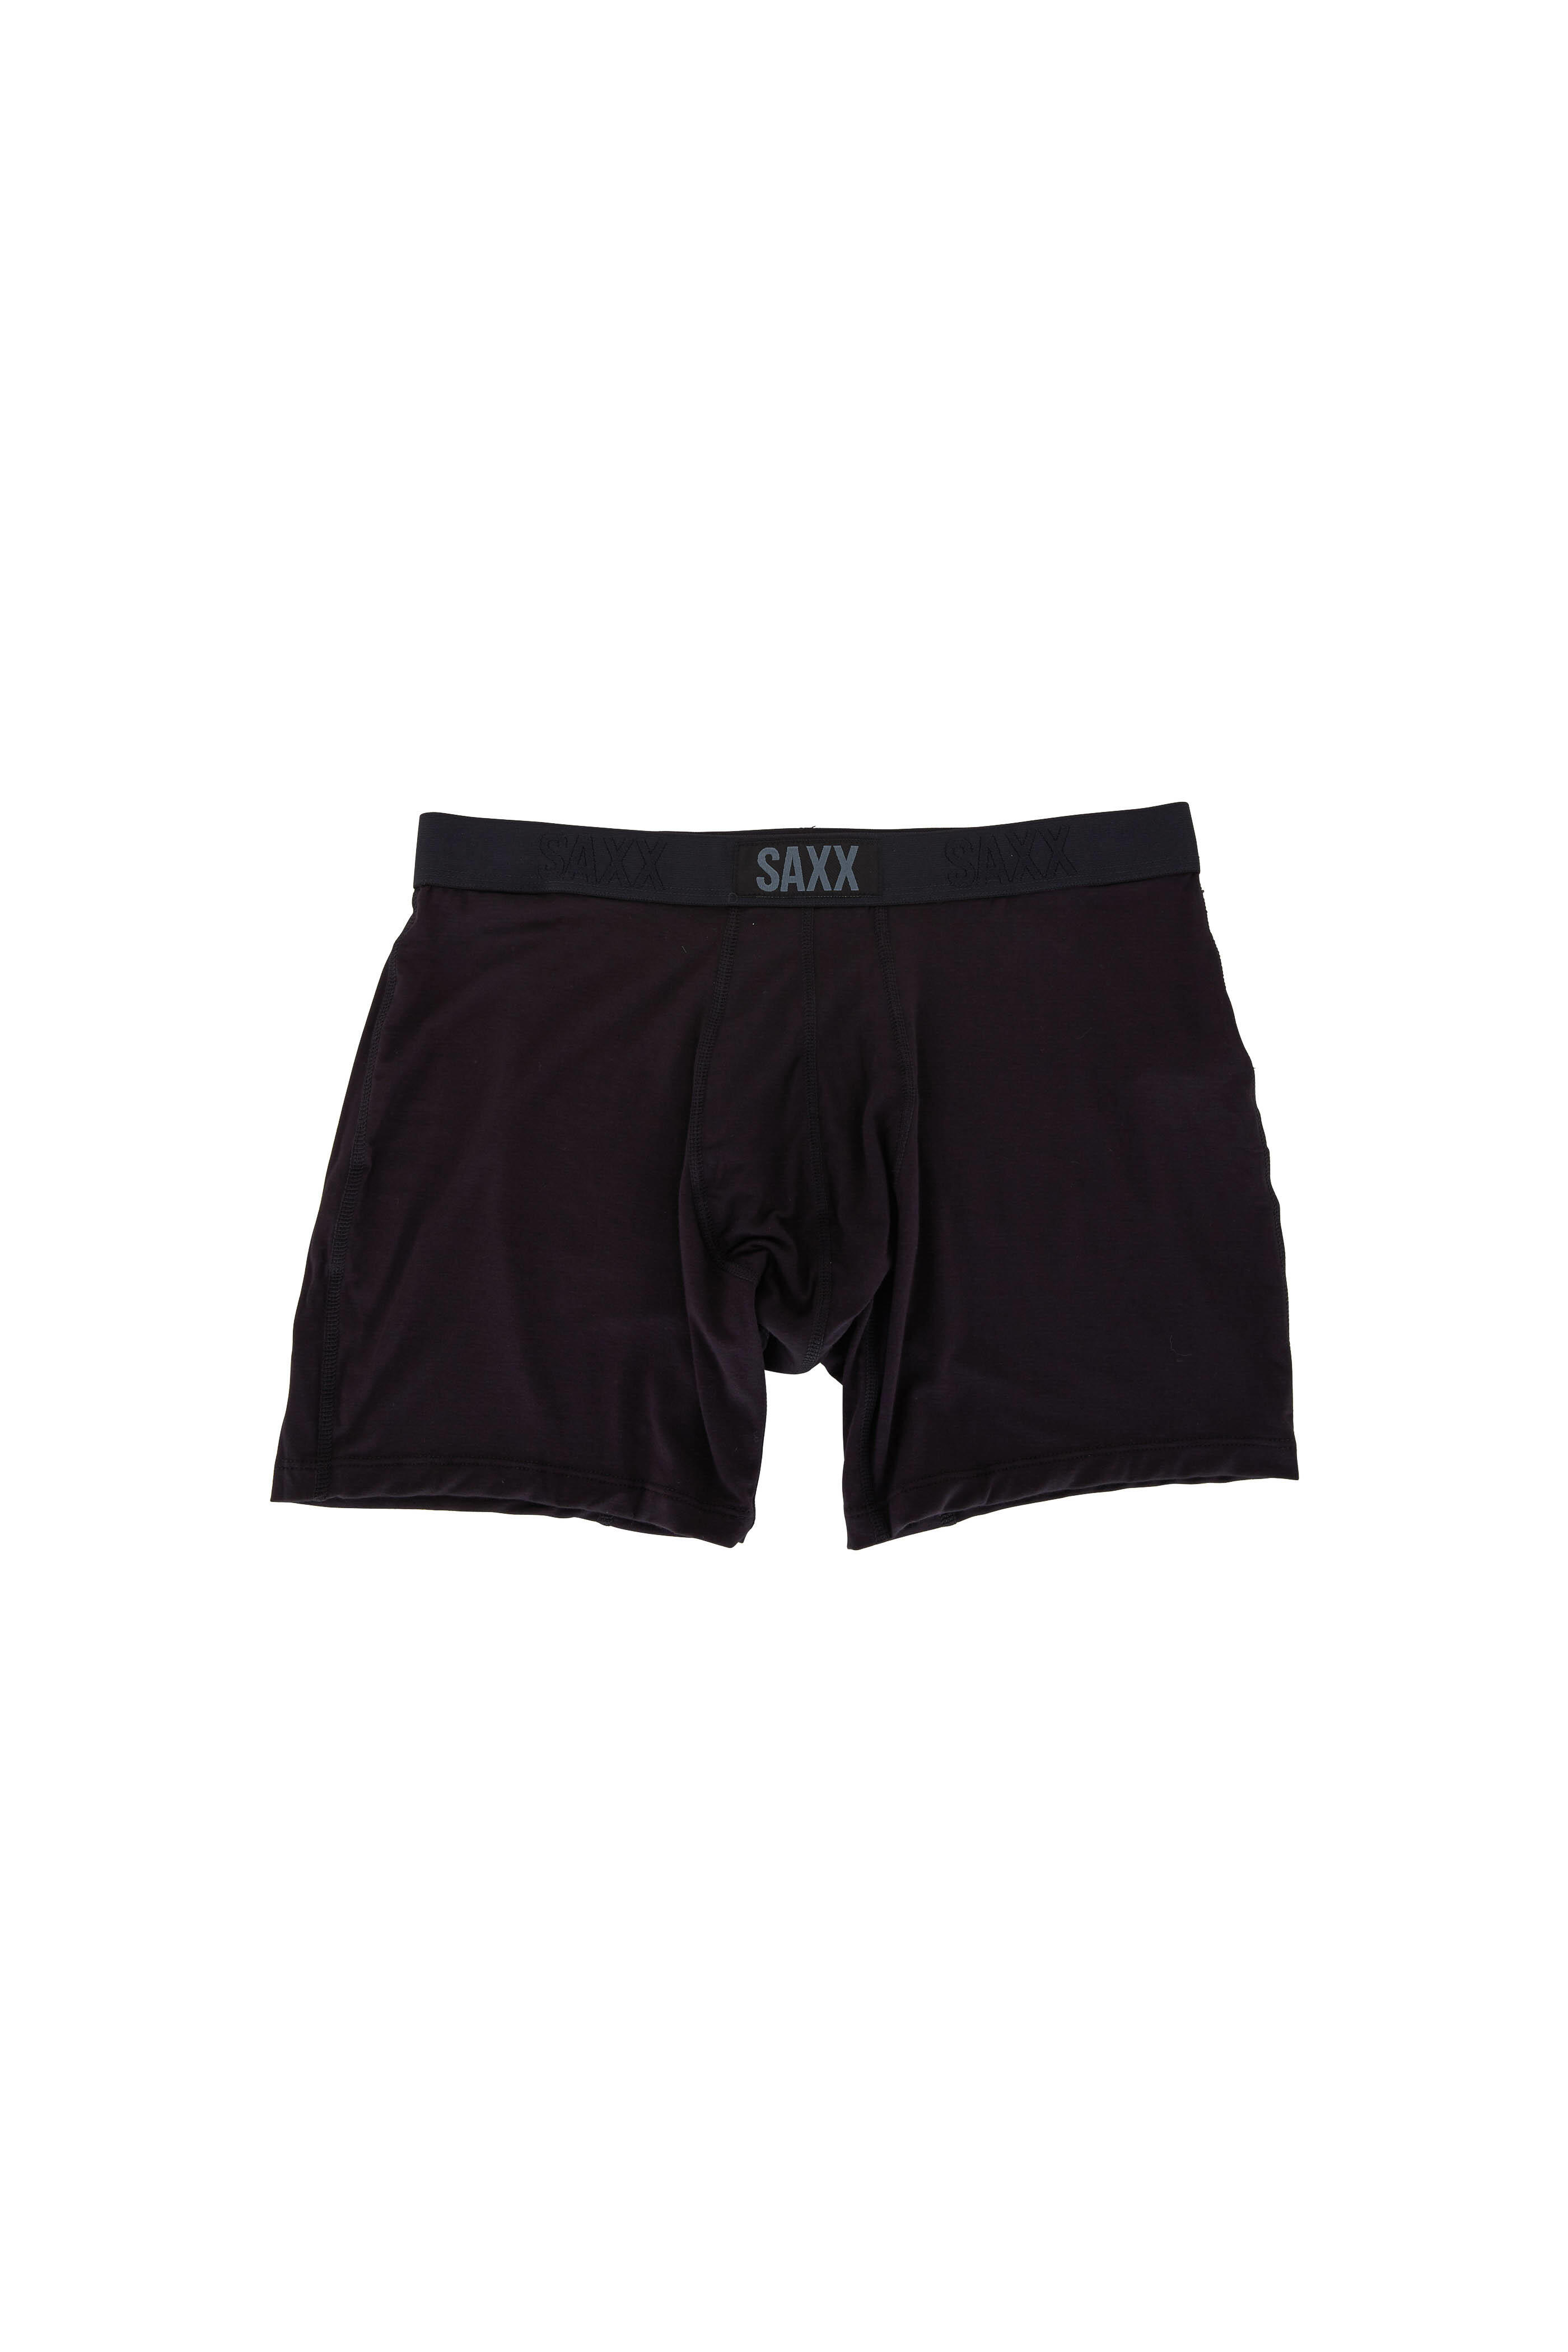 Saxx Underwear - Vibe Black Boxer Brief | Mitchell Stores